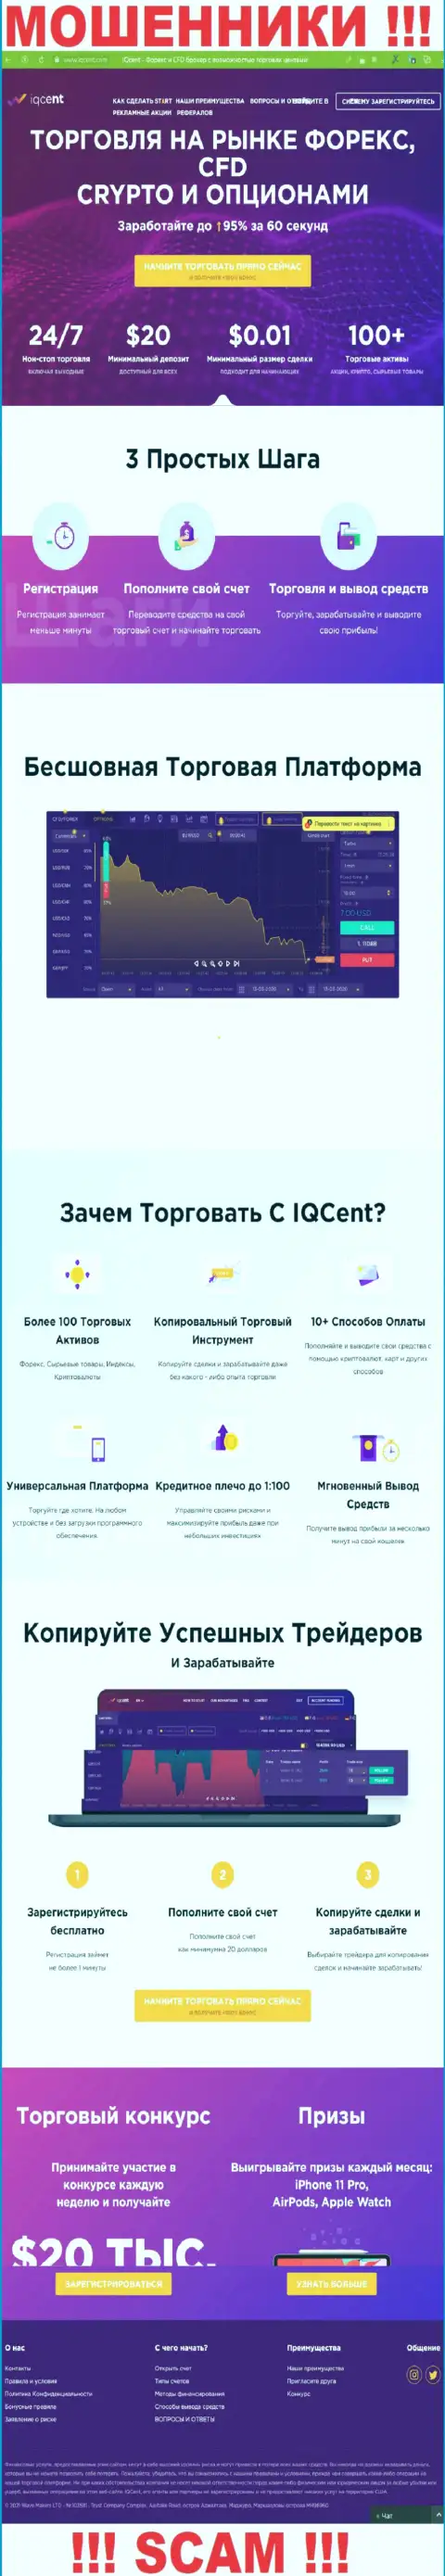 Официальный сайт шулеров IQCent, переполненный сведениями для лохов